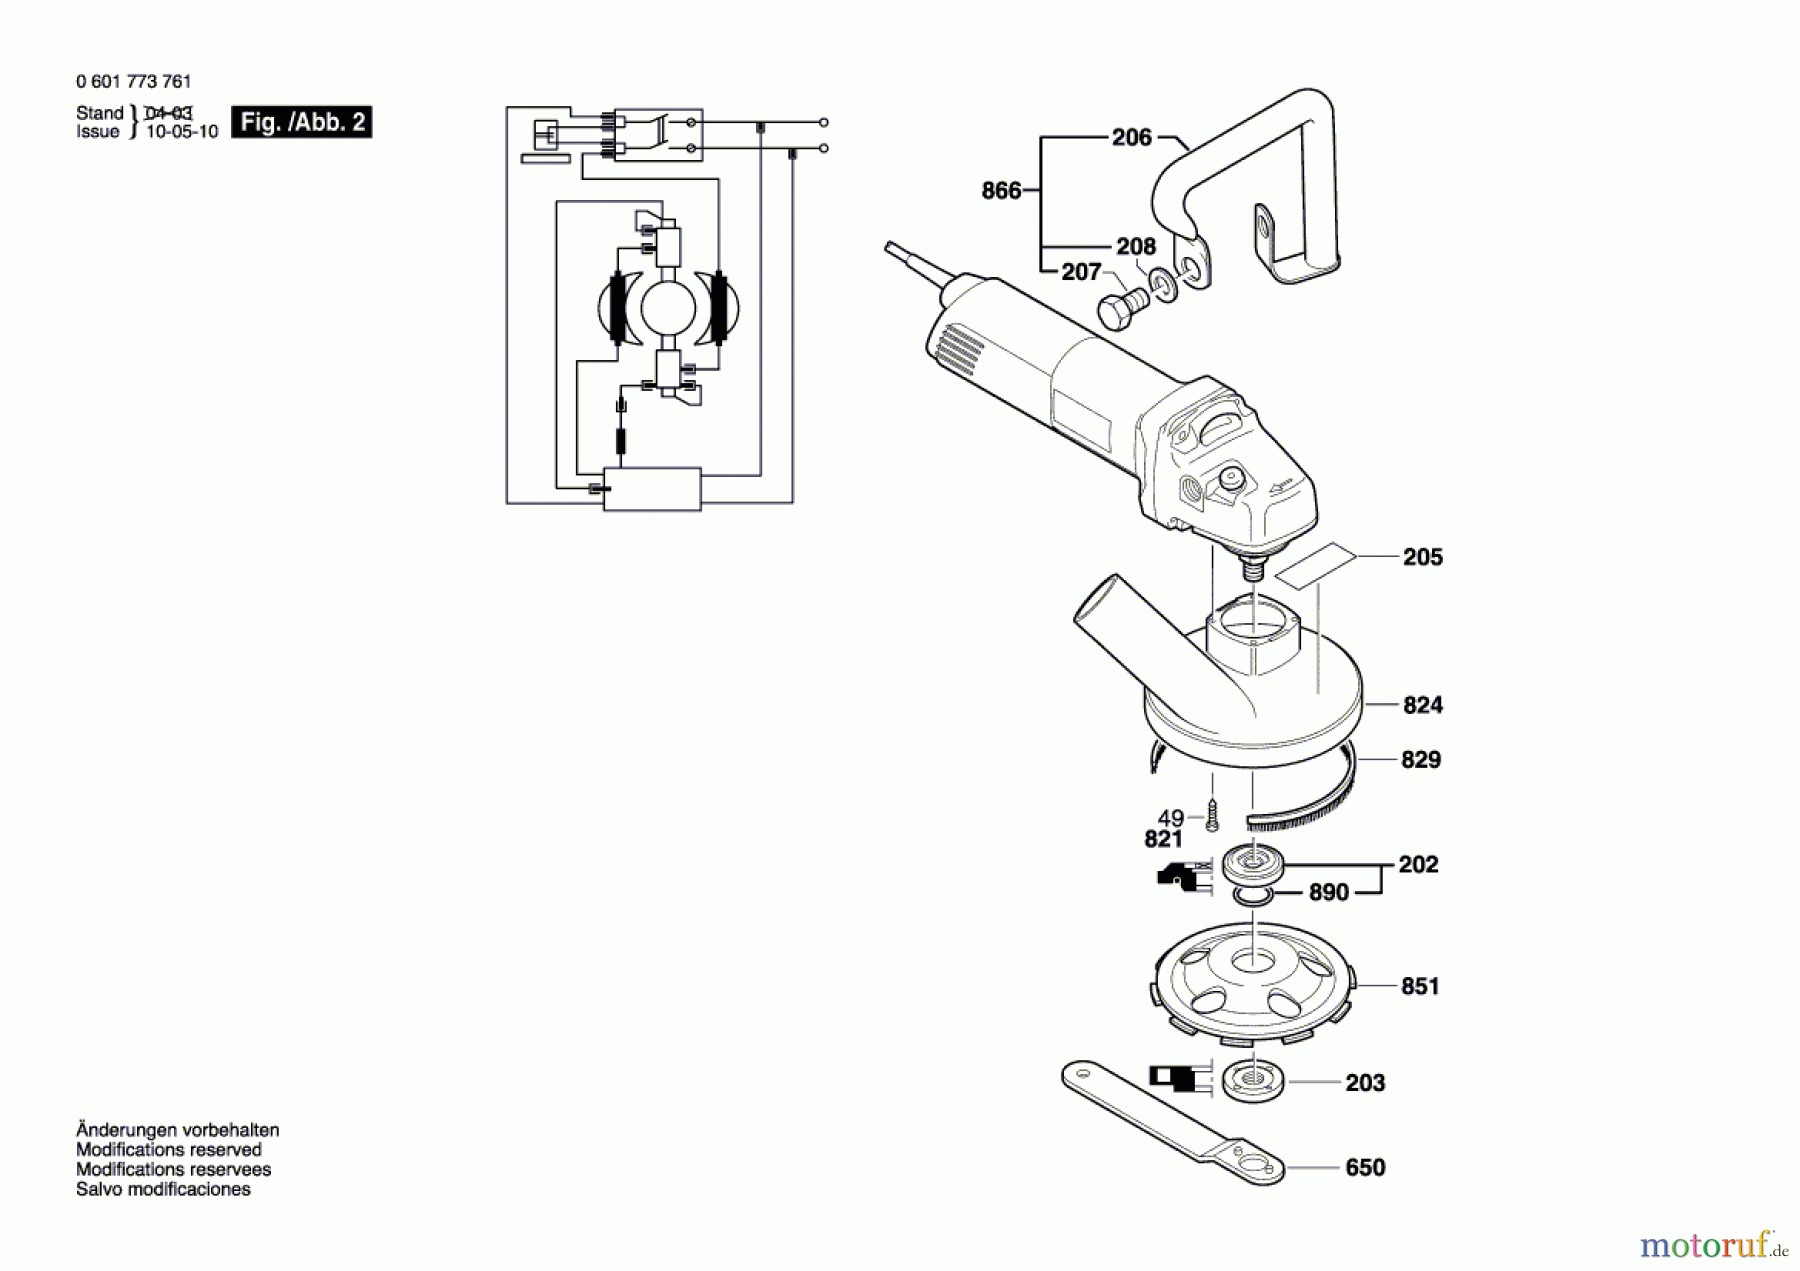  Bosch Werkzeug Betonschleifer GBR 14 C Seite 2